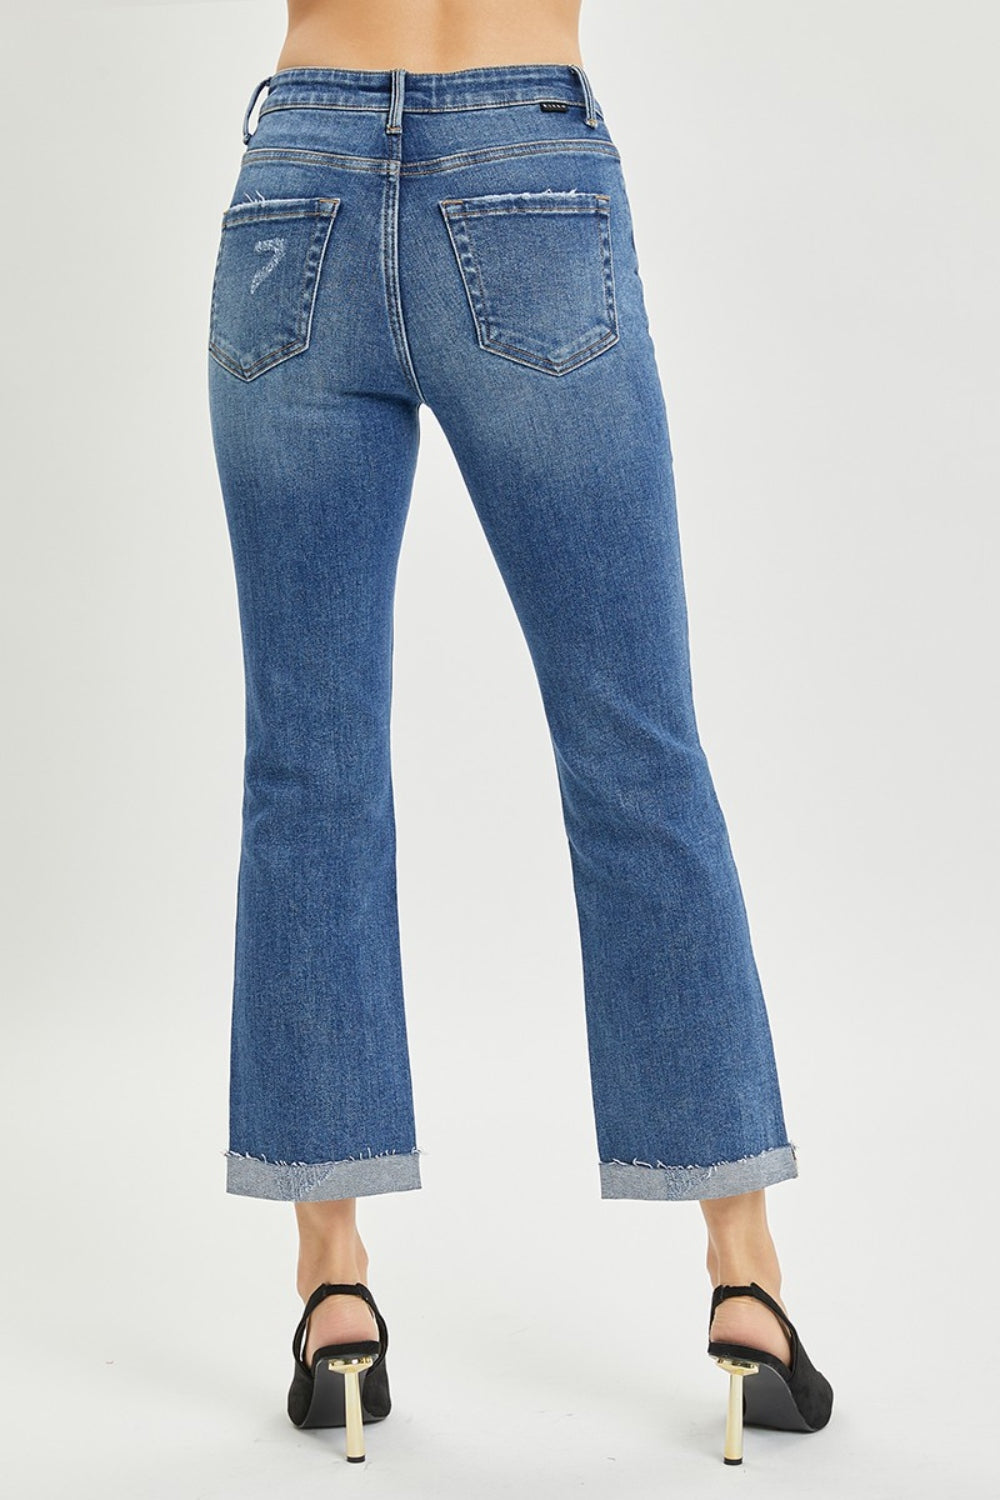 RISEN Straight Leg Jeans - Ankle Length - Inspired Eye Boutique